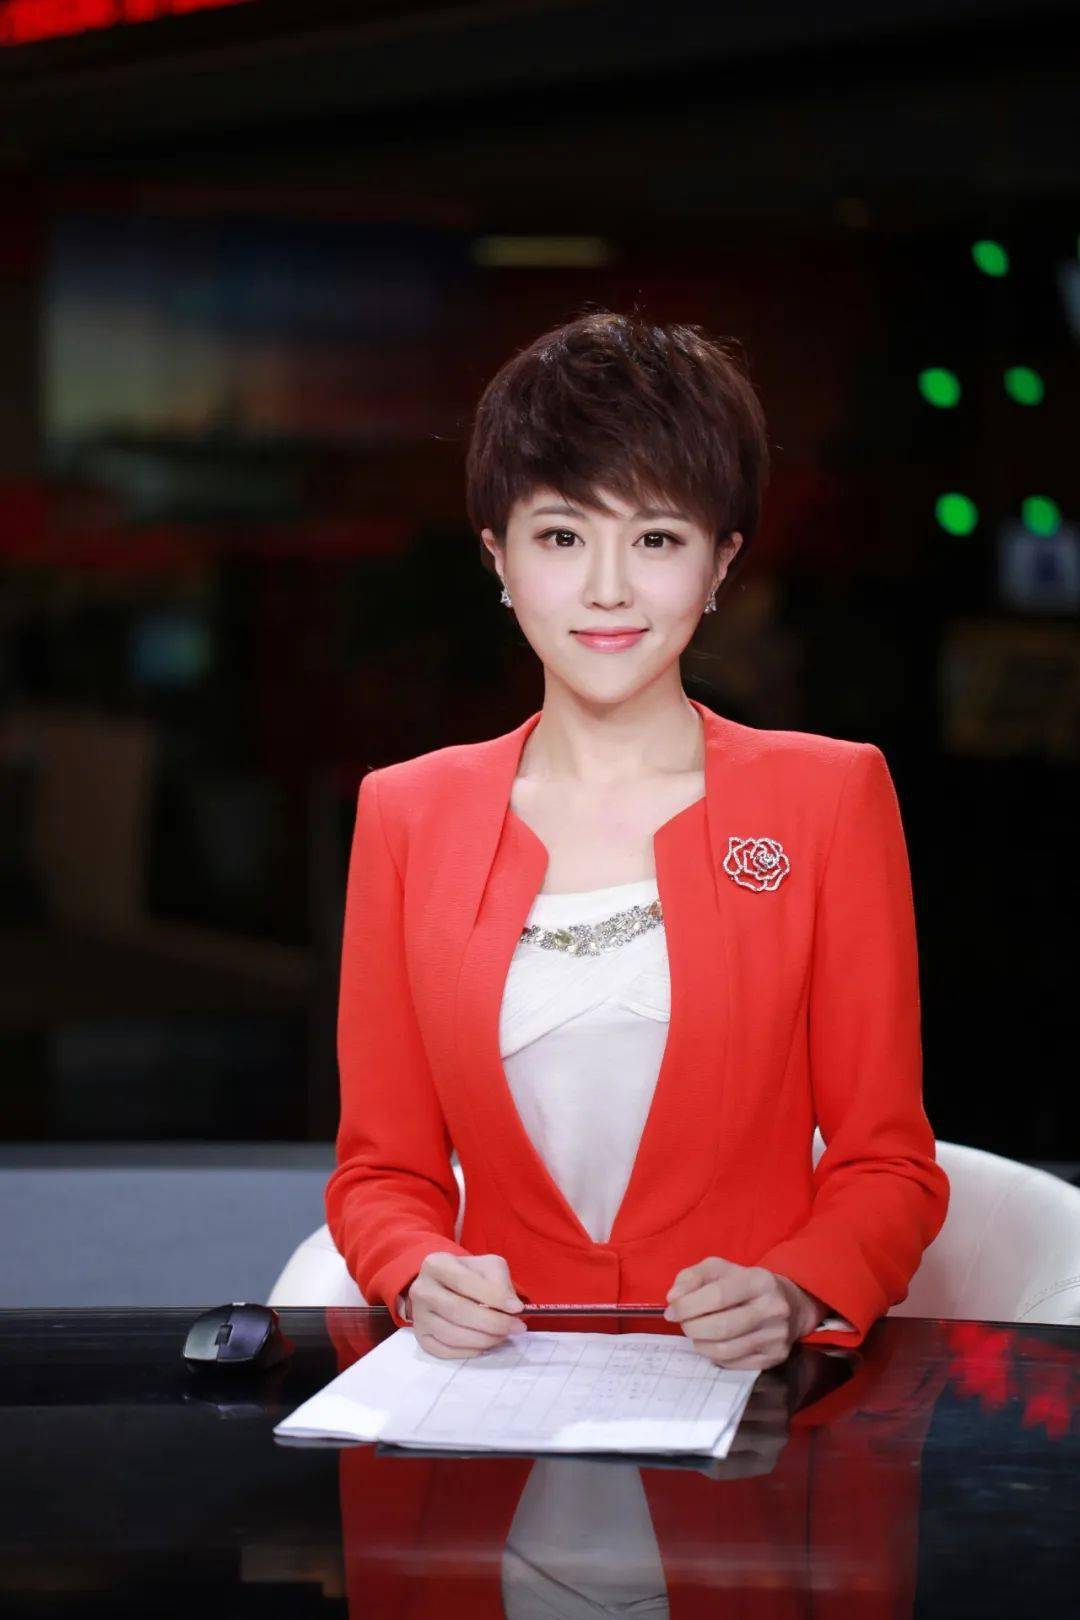 《看东方》栏目主播校友赵亮担任成都电视台主持人校友于易洲夺冠第45